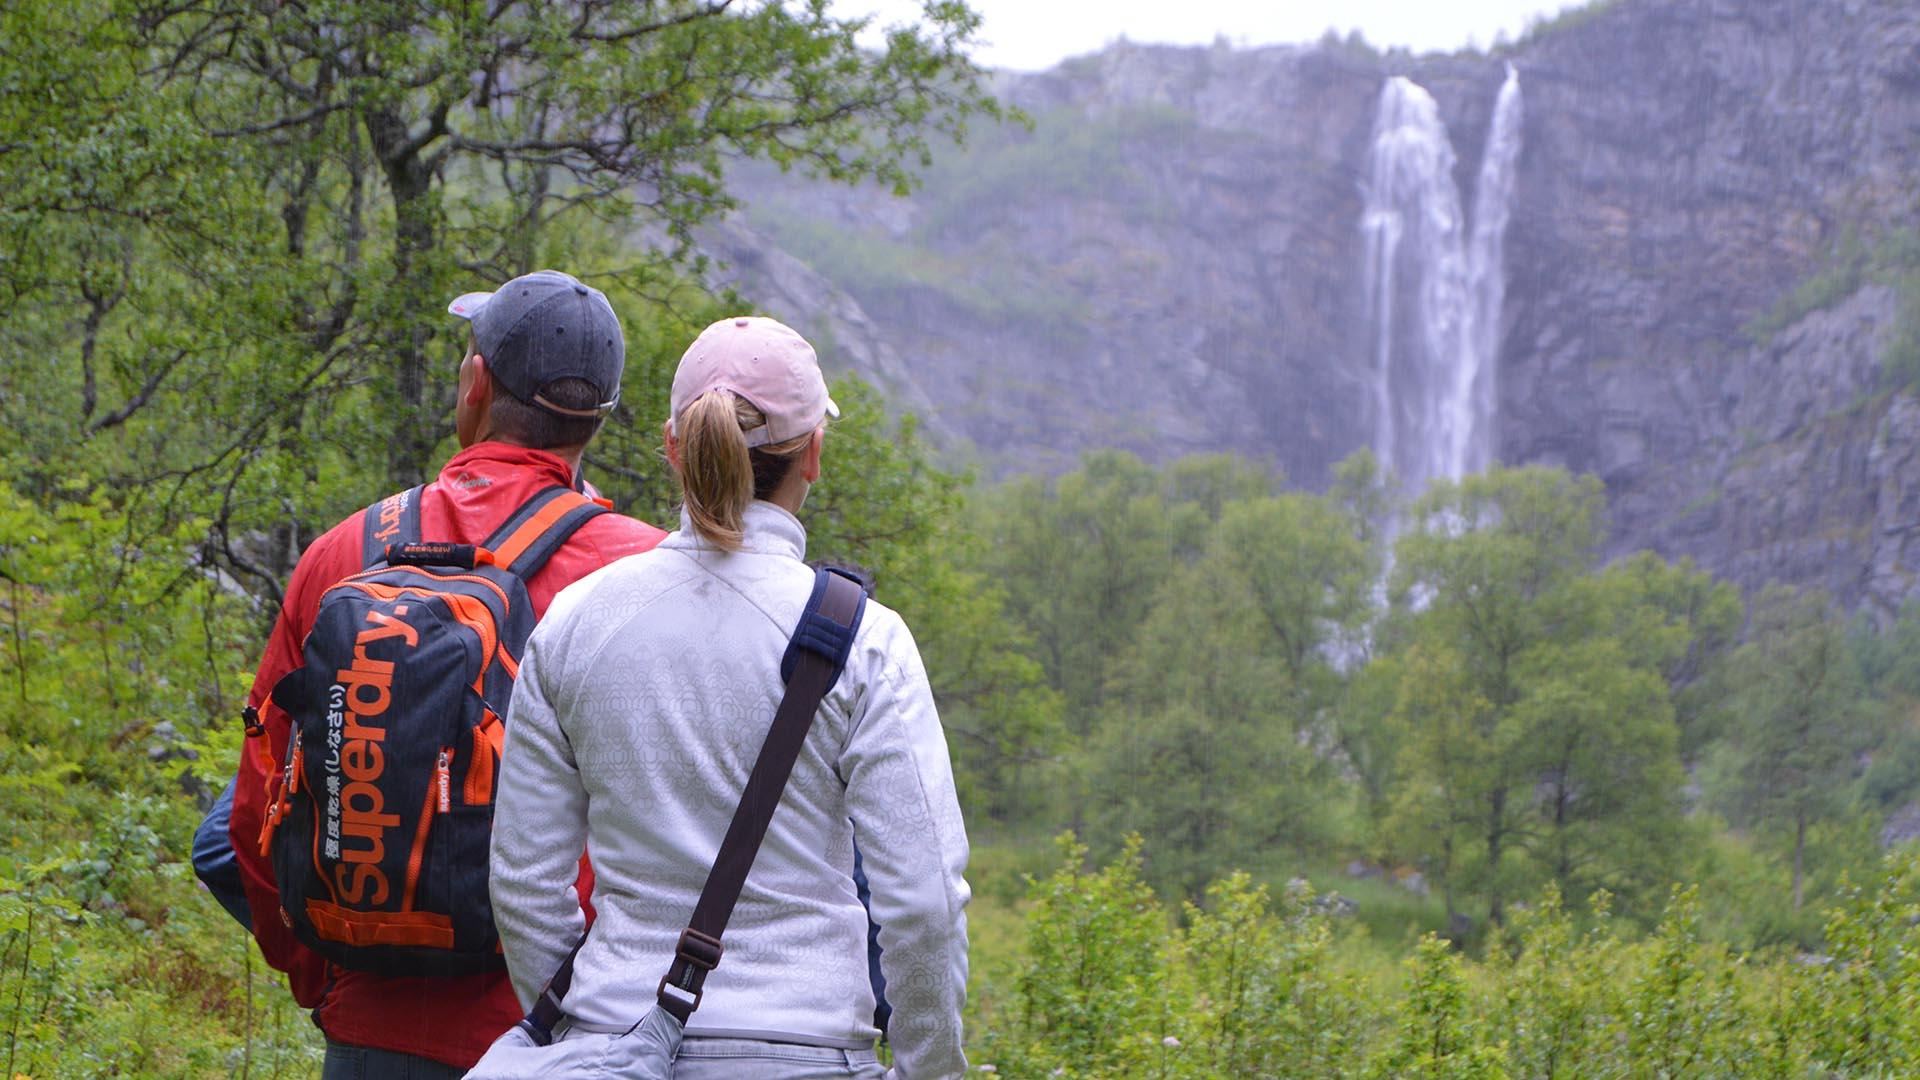 Zwei Wanderer stehen in einem üppigen, grünen Tal, das von einer Felswand eingeschlossen ist, von der ein Wasserfall herabstürzt.